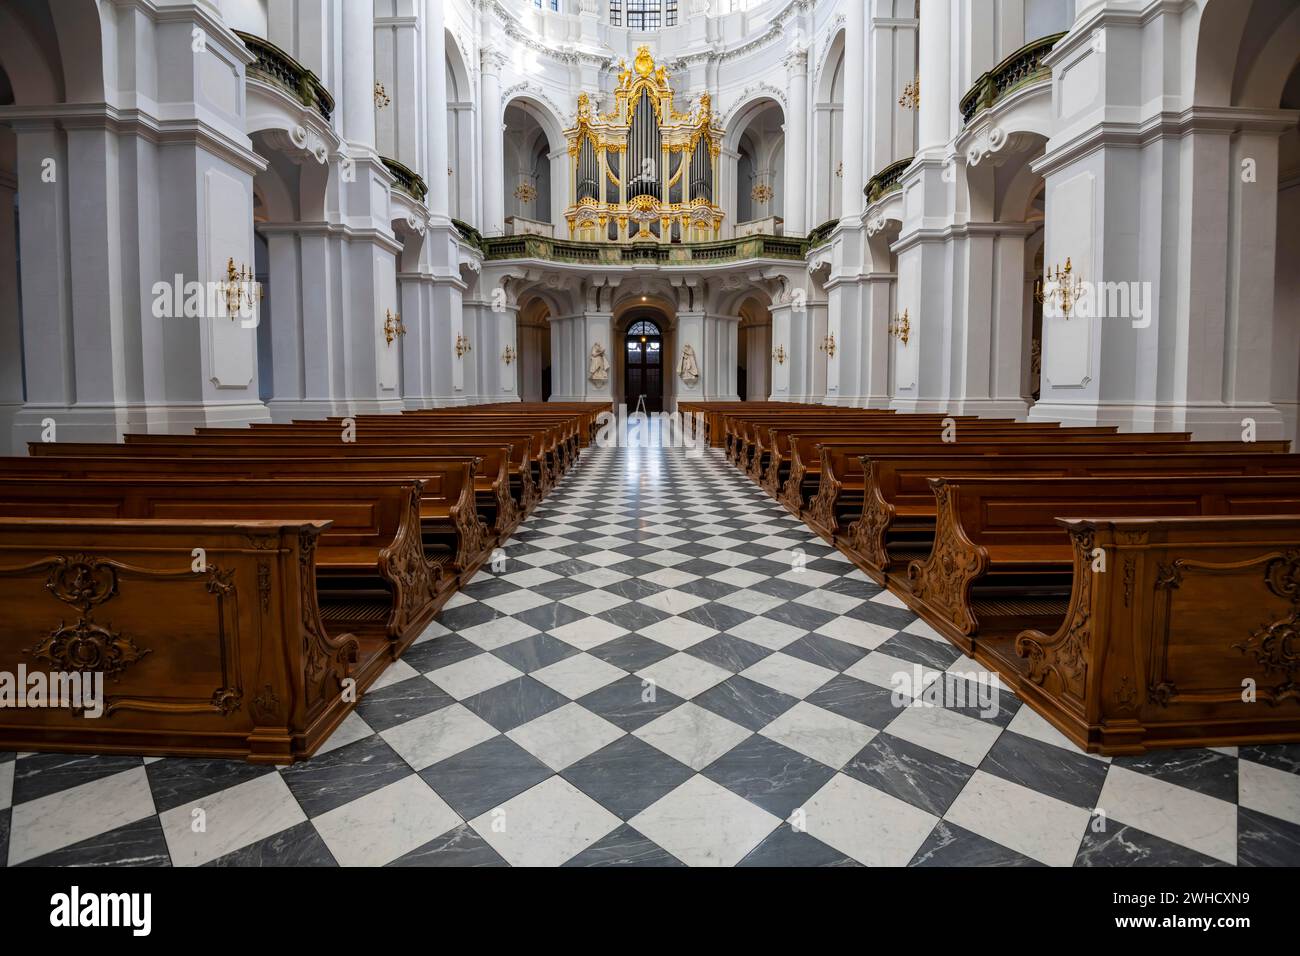 Vue intérieure de la cathédrale St Trinitatis, loft d'orgue, Dresde, État libre de Saxe, Allemagne Banque D'Images